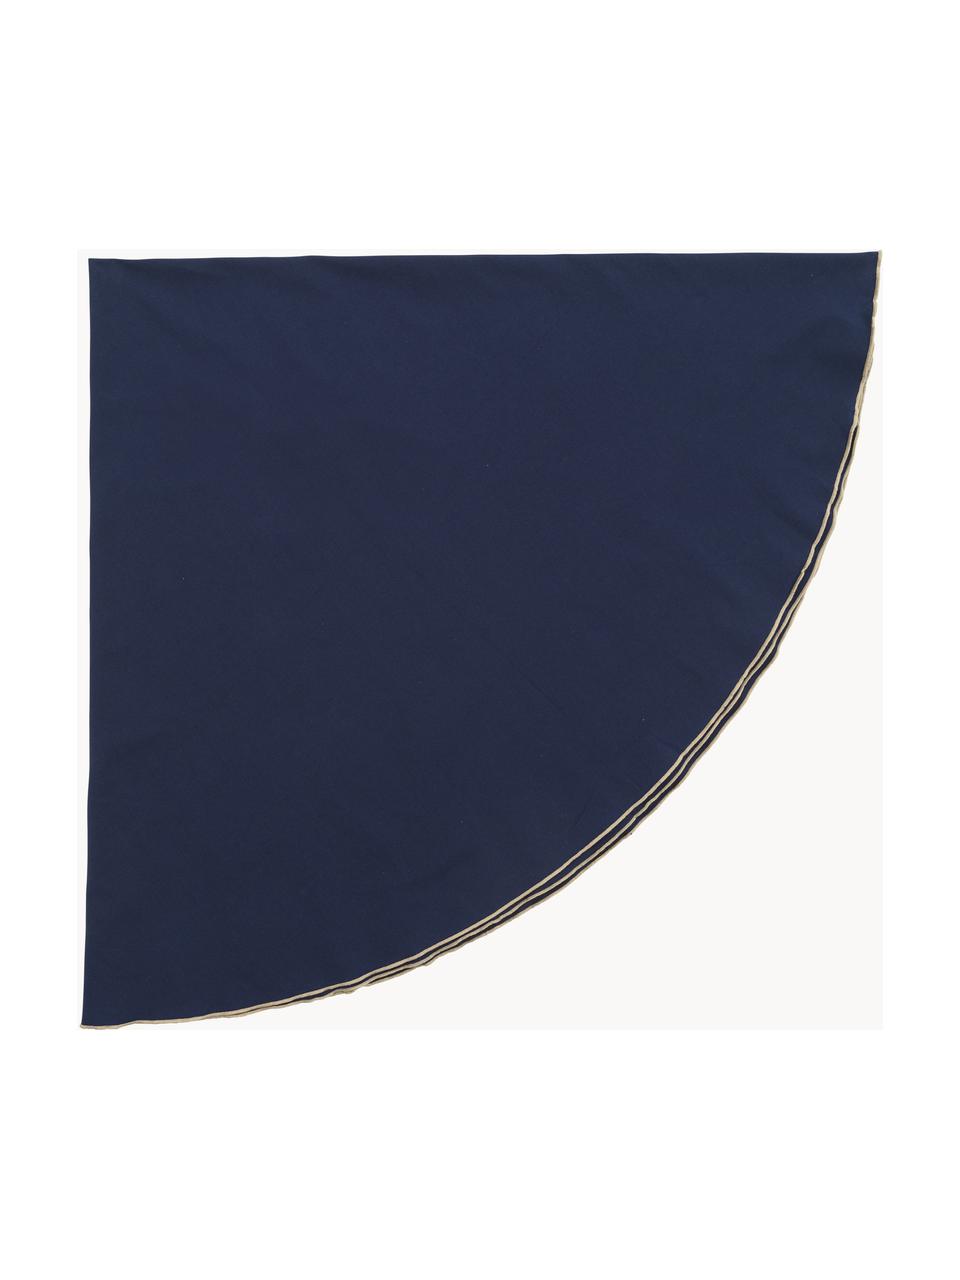 Nappe ronde Wilhelmina, 100 % coton, Bleu foncé, 6-8 personnes (Ø 200 cm)